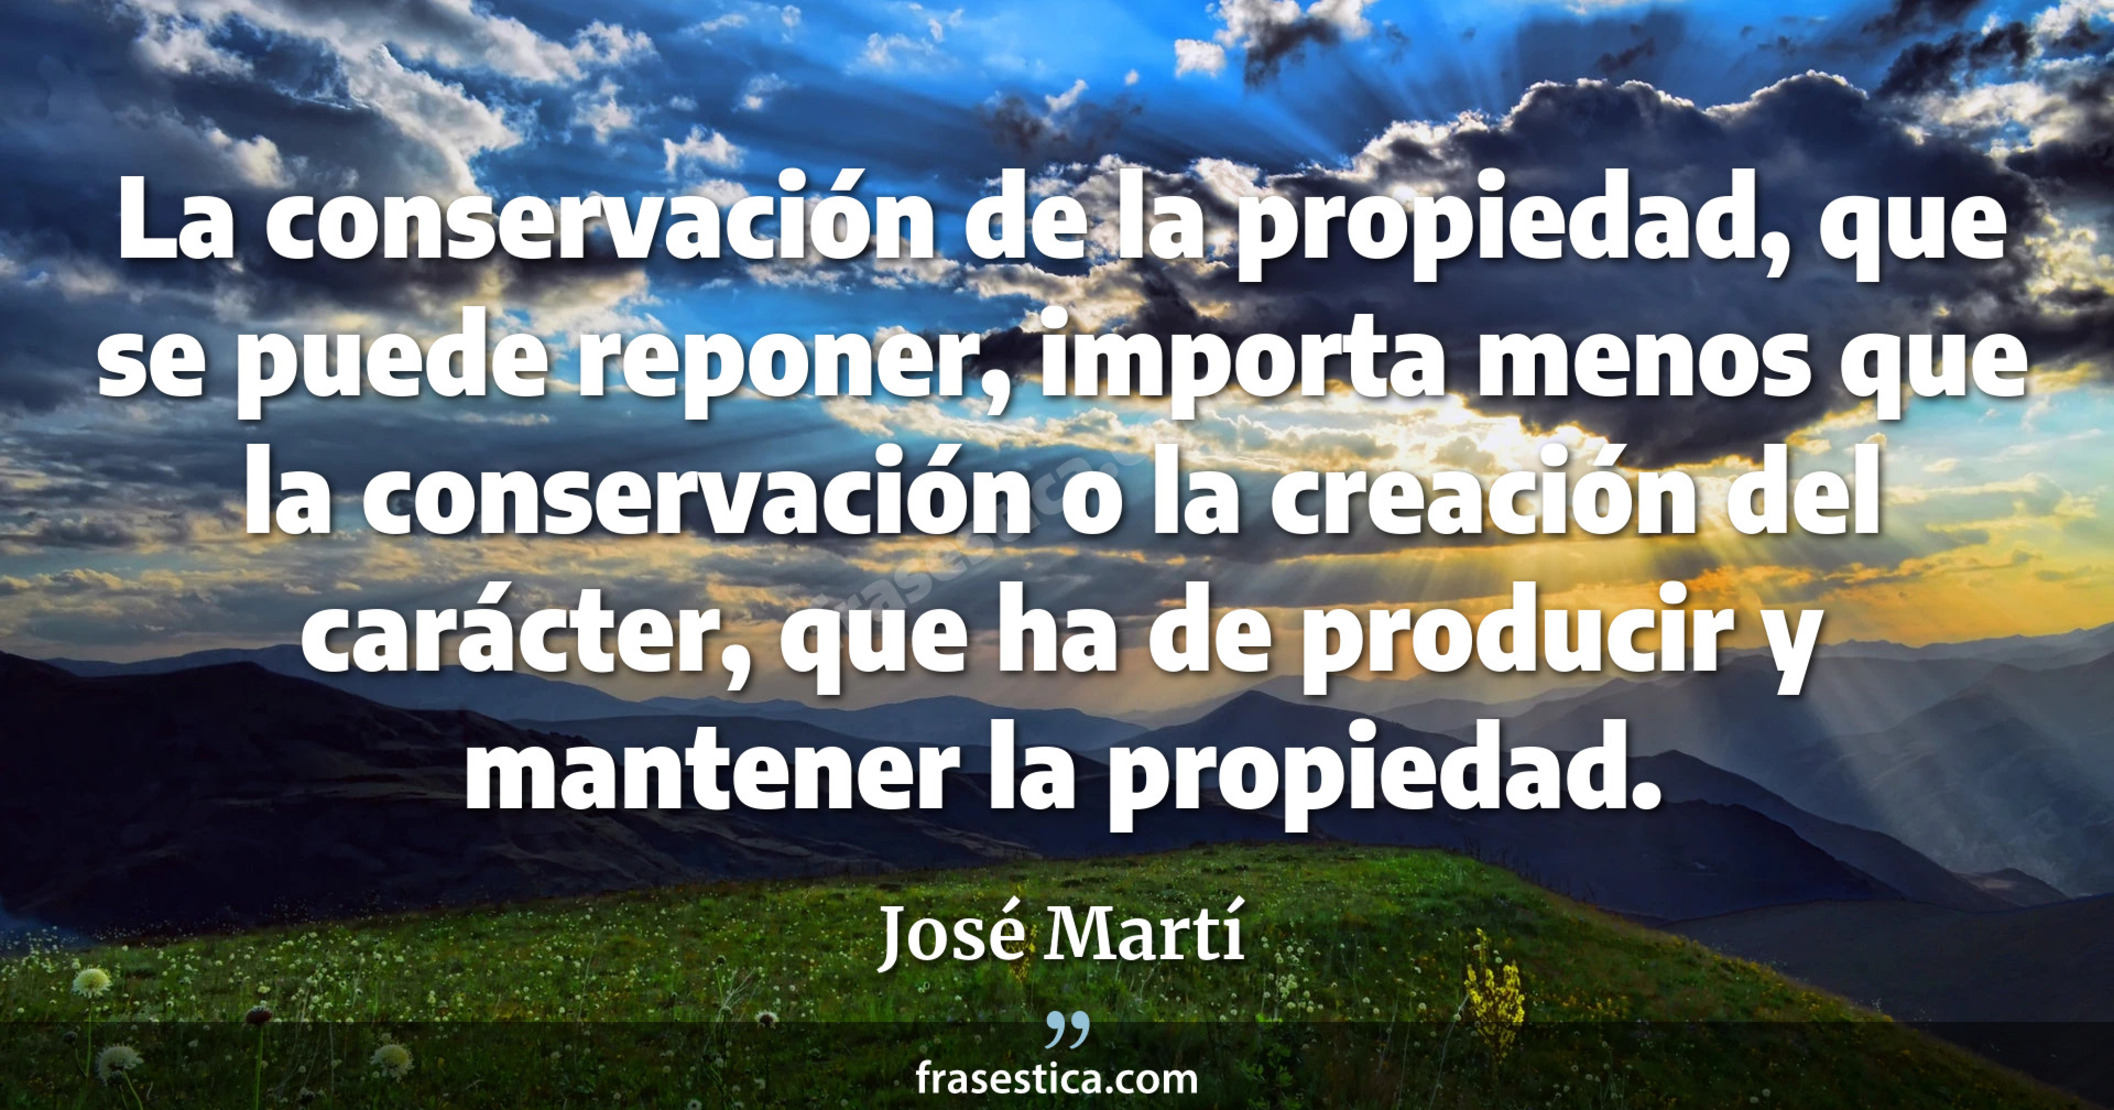 La conservación de la propiedad, que se puede reponer, importa menos que la conservación o la creación del carácter, que ha de producir y mantener la propiedad. - José Martí